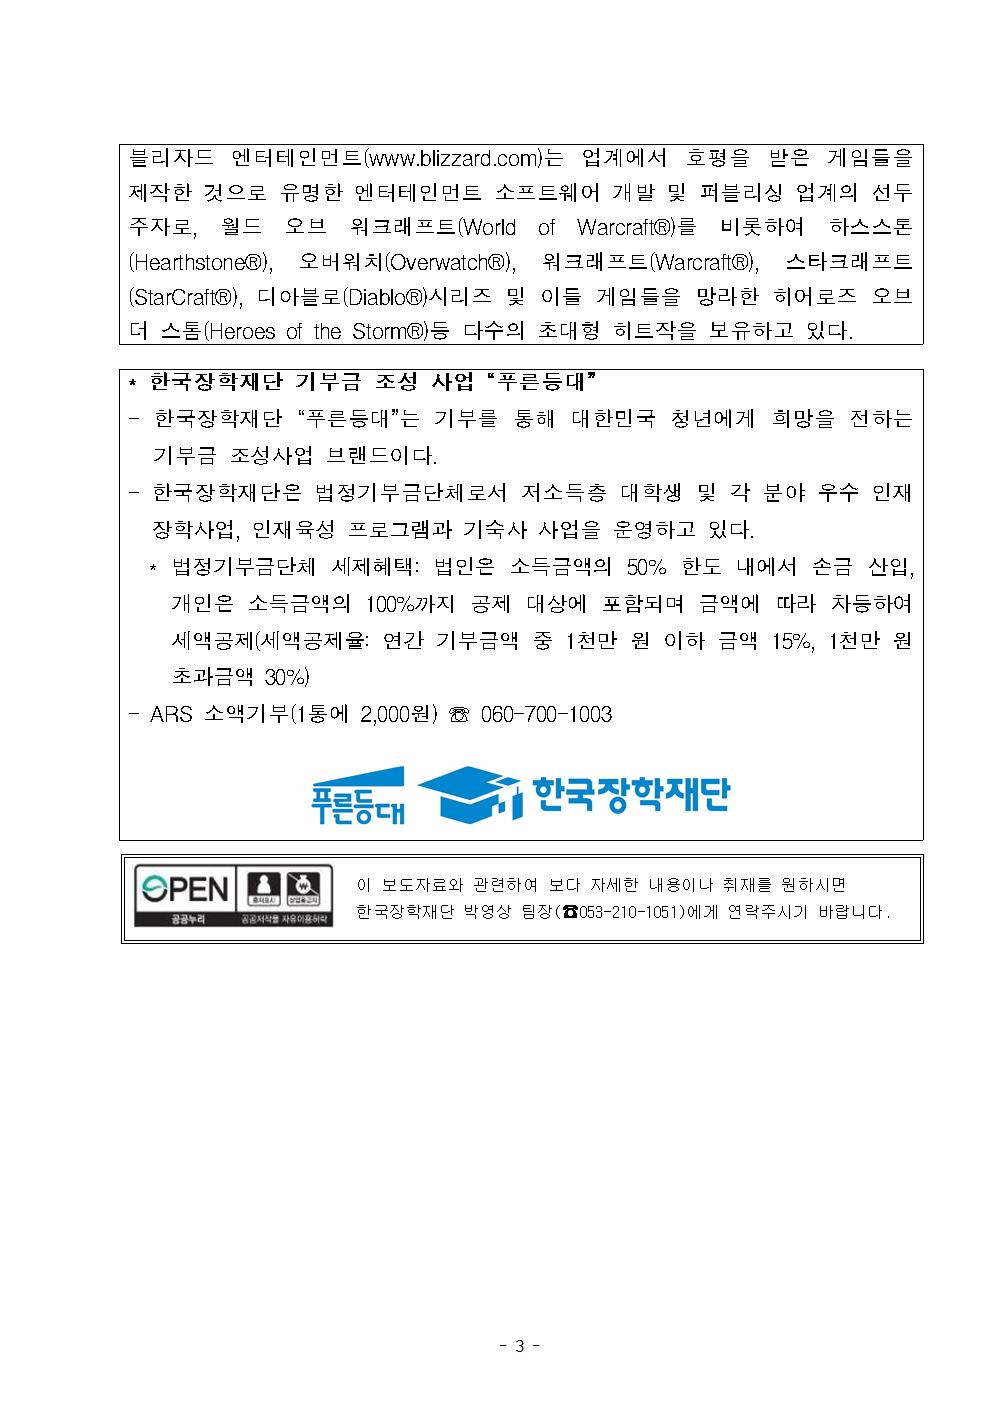 10-21(월)[보도자료] 한국장학재단, 블리자드 엔터테인먼트와 해외탐방 프로그램 발대식 개최003.jpg